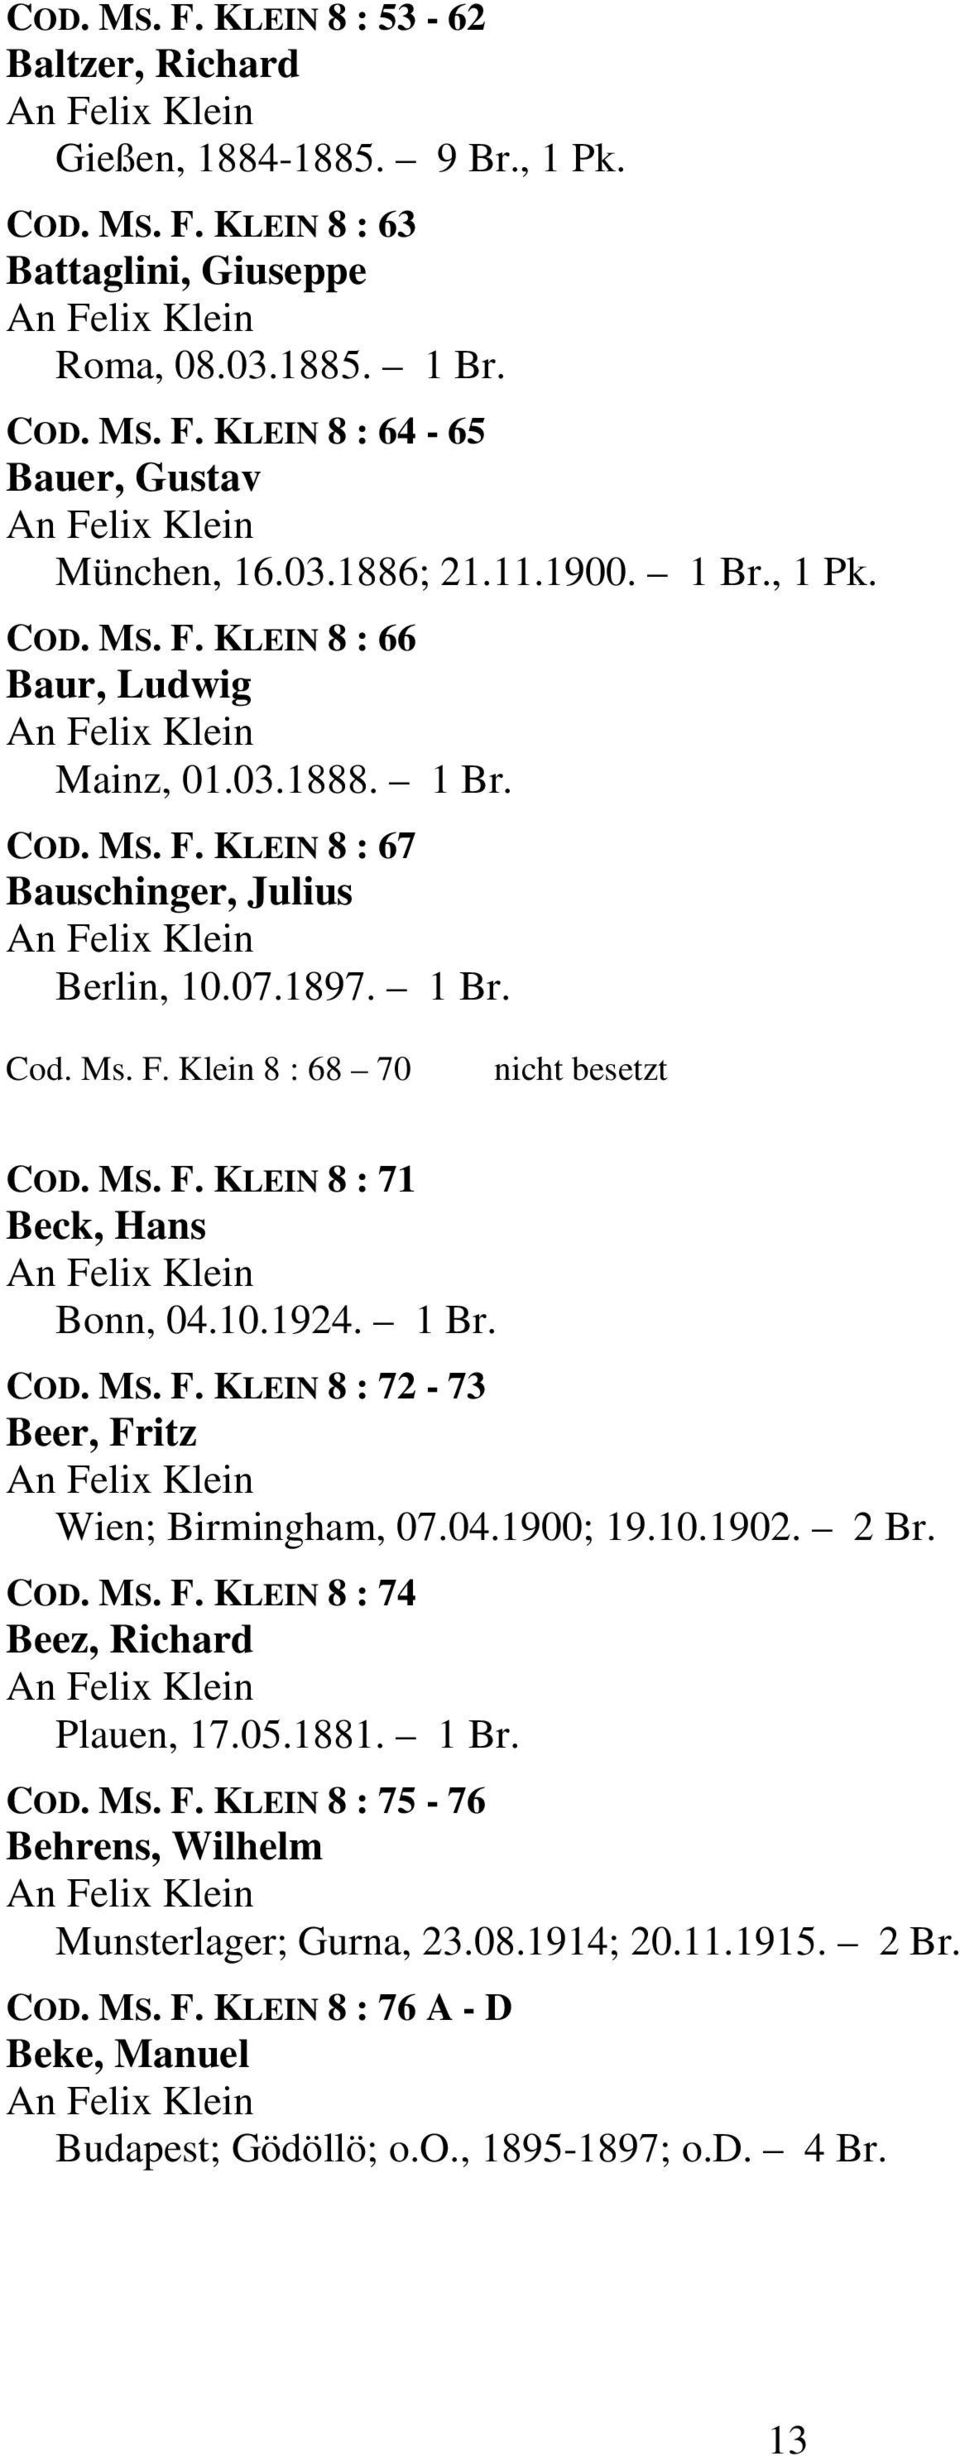 MS. F. KLEIN 8 : 71 Beck, Hans Bonn, 04.10.1924. 1 Br. COD. MS. F. KLEIN 8 : 72-73 Beer, Fritz Wien; Birmingham, 07.04.1900; 19.10.1902. 2 Br. COD. MS. F. KLEIN 8 : 74 Beez, Richard Plauen, 17.05.